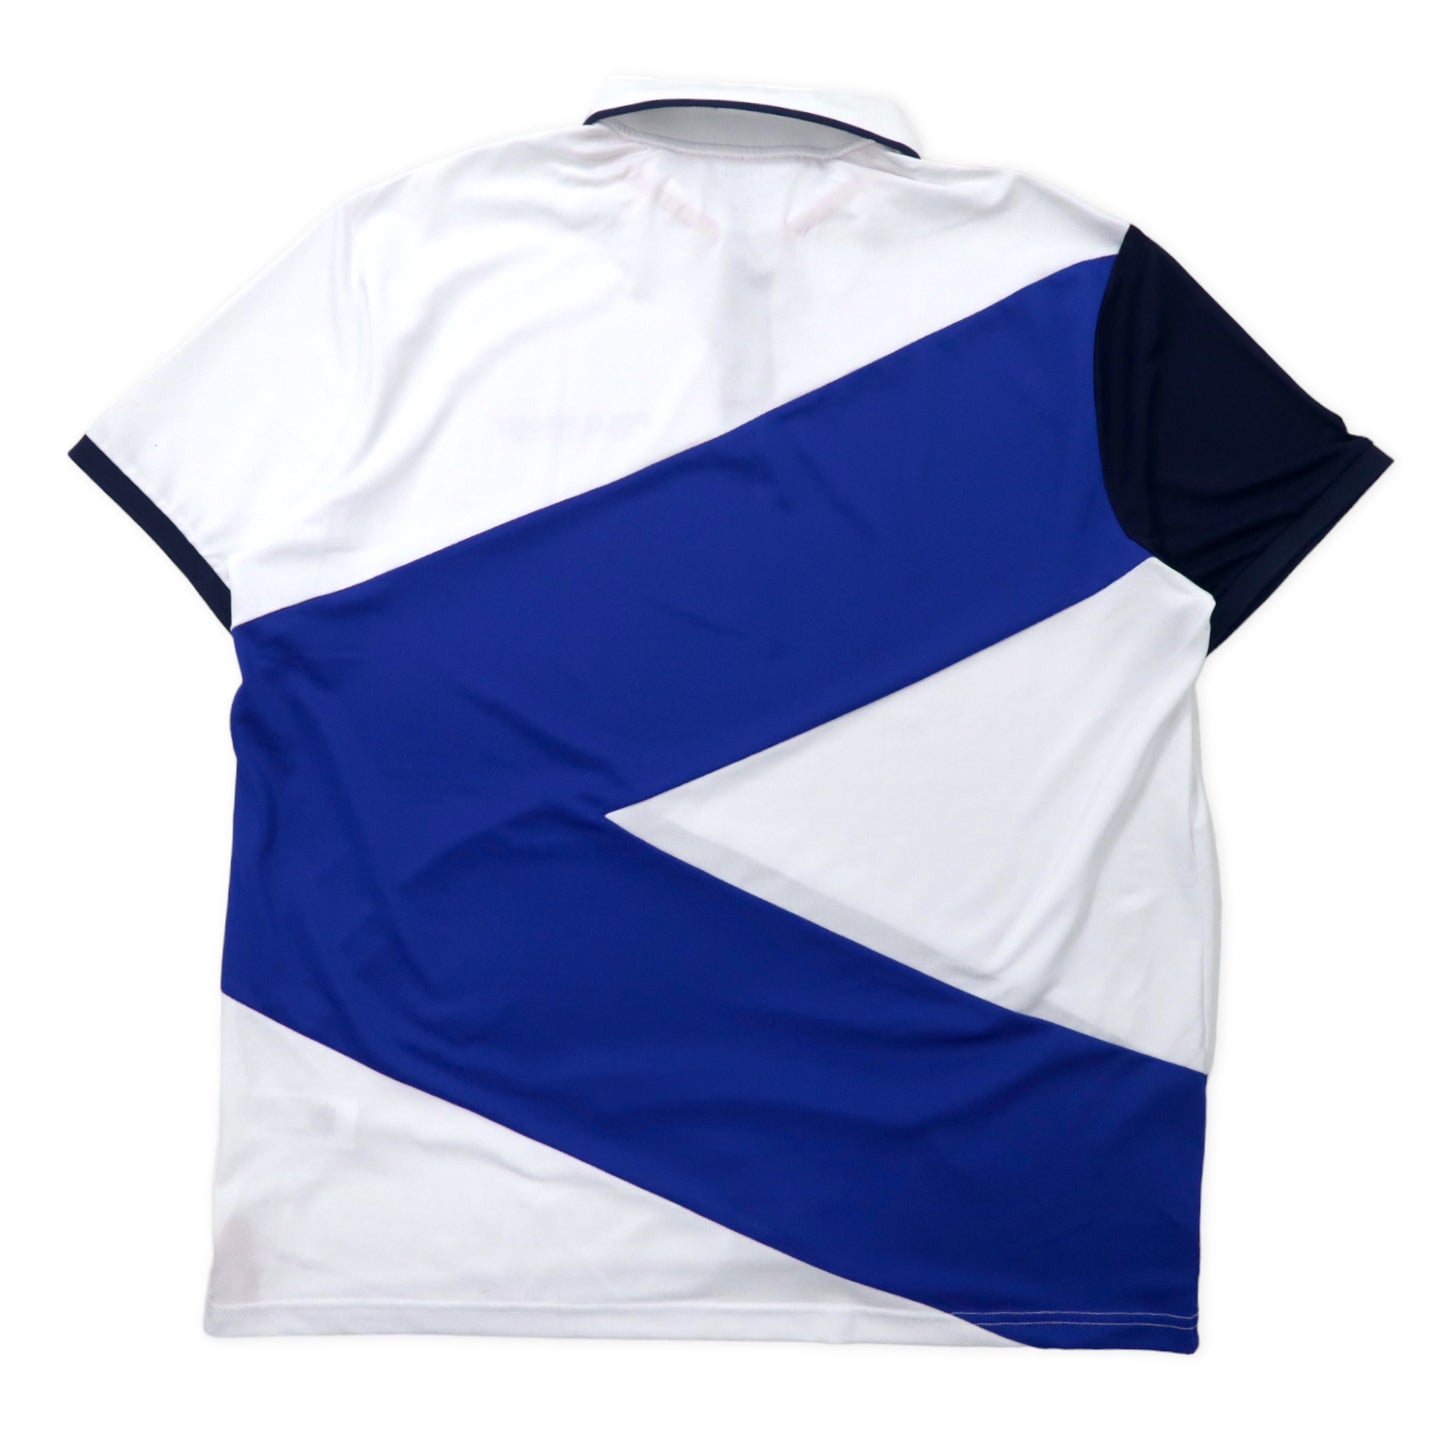 POLO RALPH LAUREN パフォーマンス ポロシャツ XL ホワイト ネイビー ポリエステル ロゴプリント 星条旗